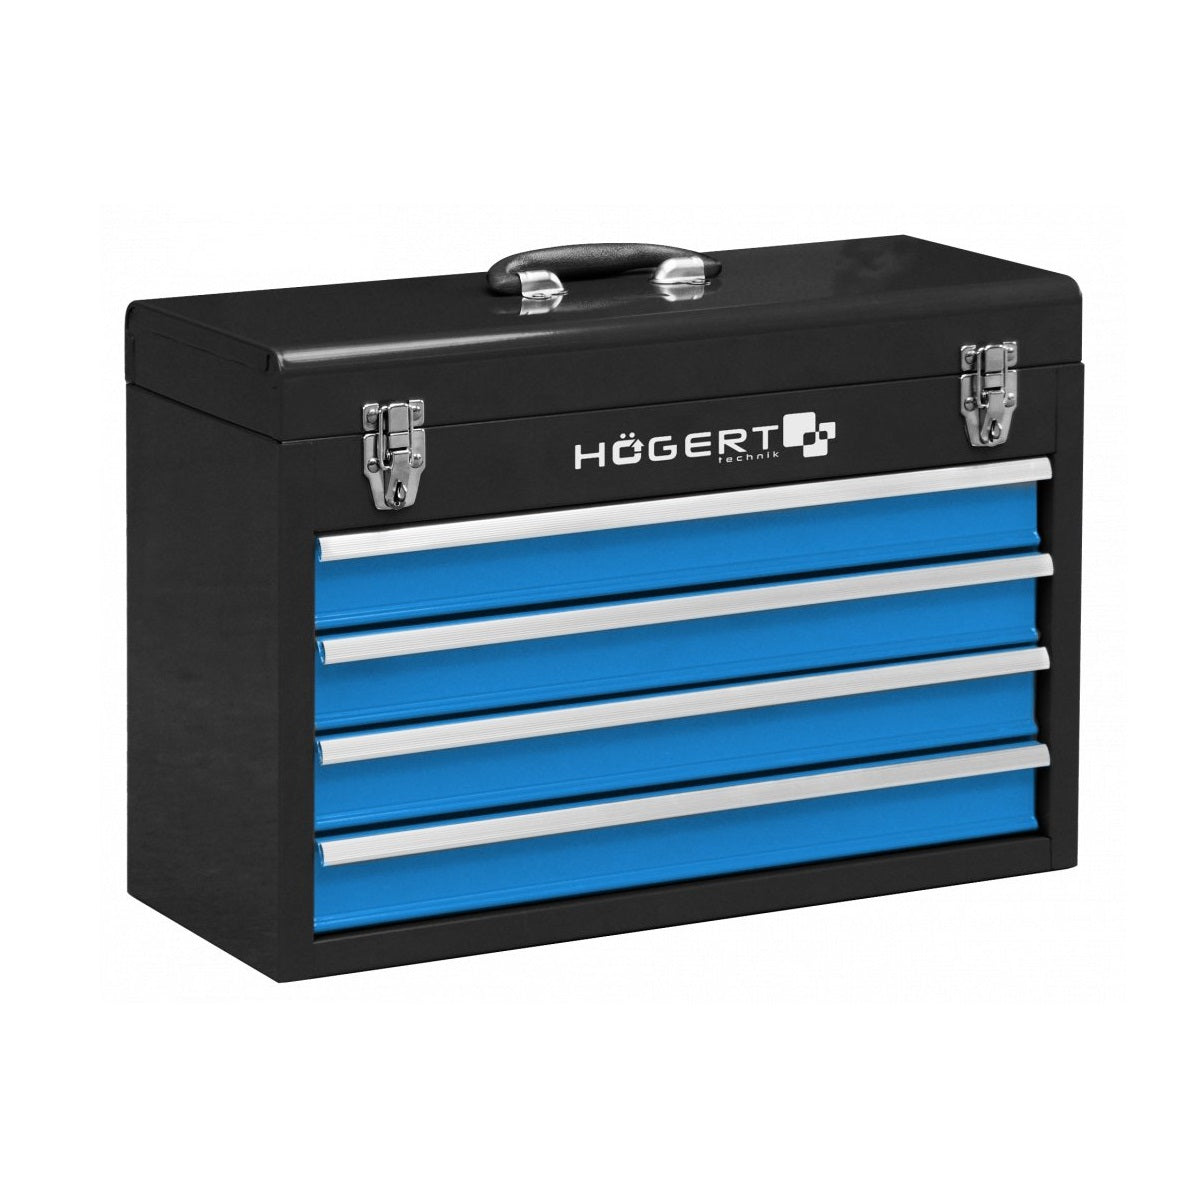 Hoegert Technik 4 Drawer Cantilever Tool Box HT7G075